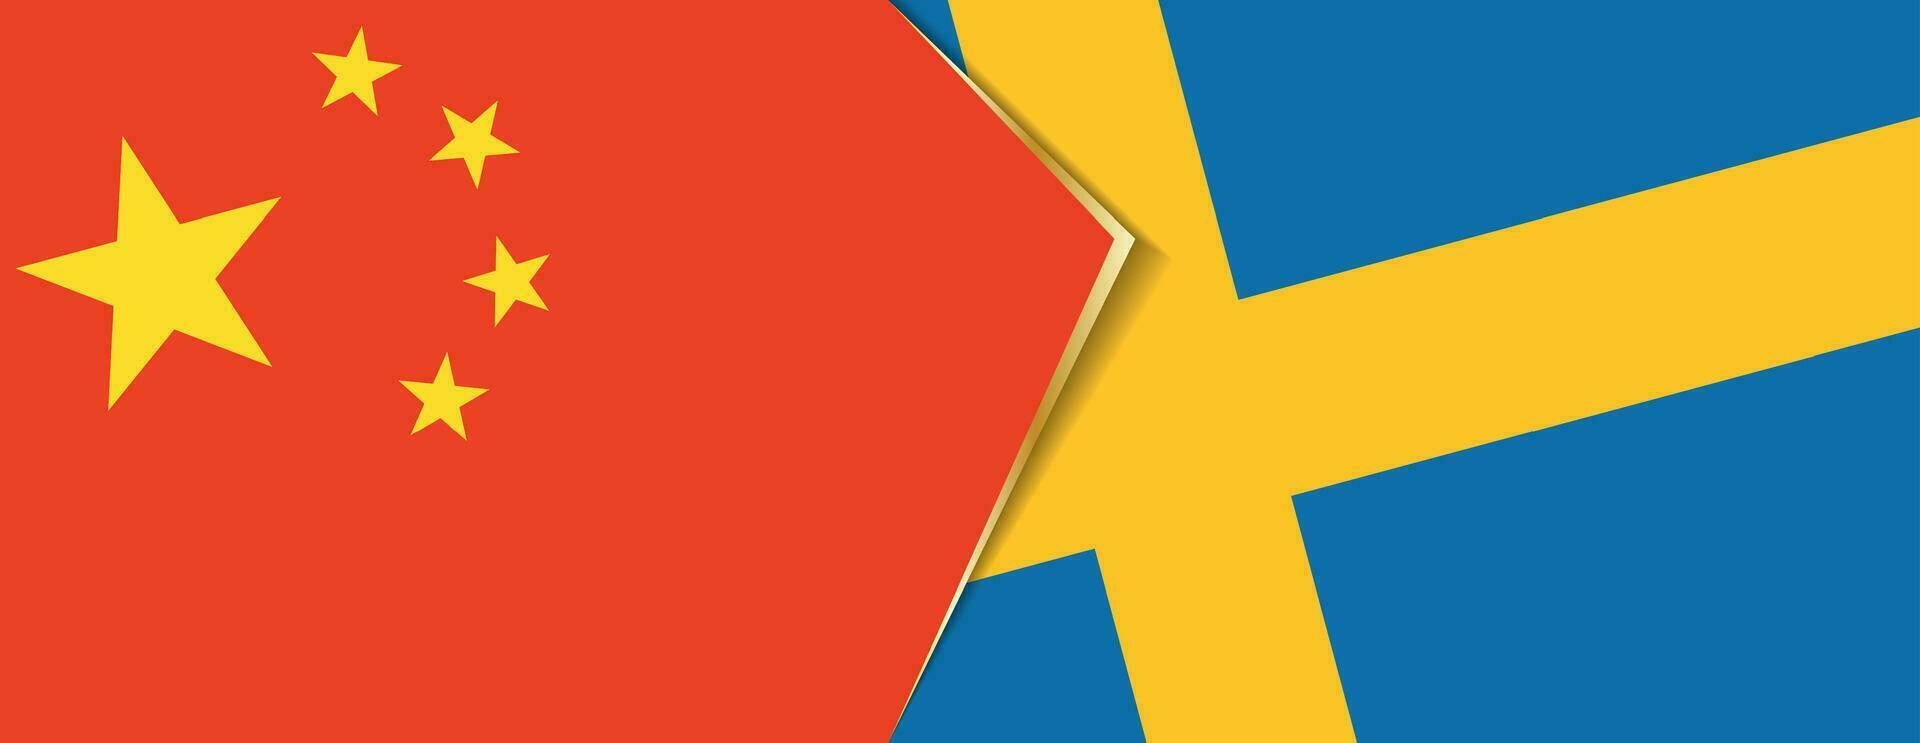 China y Suecia banderas, dos vector banderas